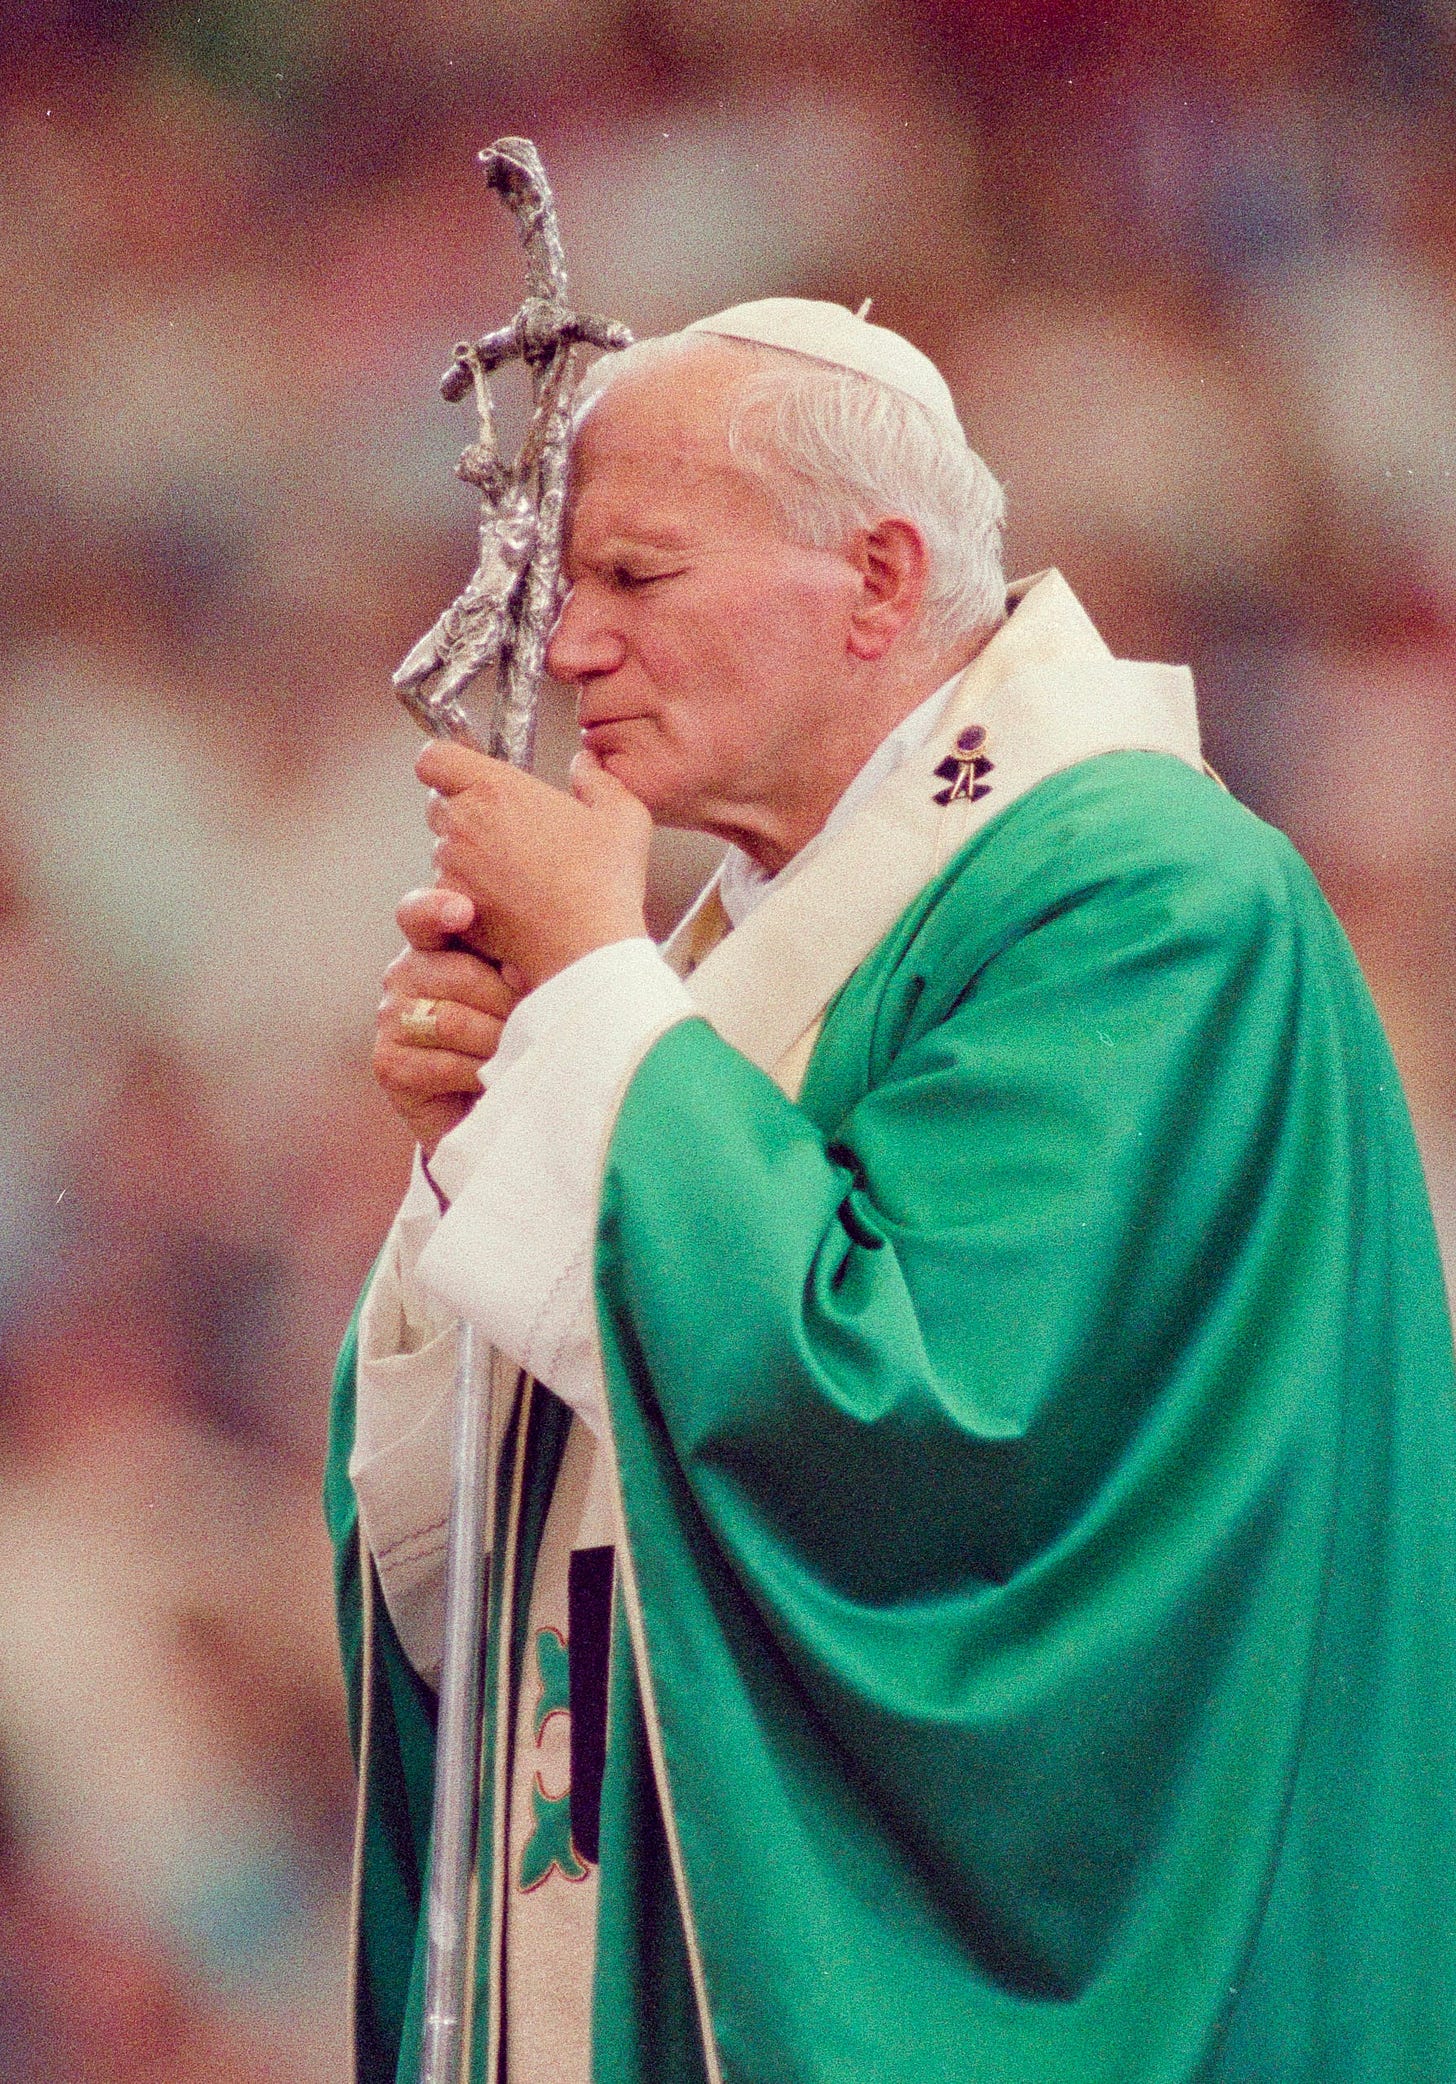 The stirring weekend Pope John Paul II visited Detroit